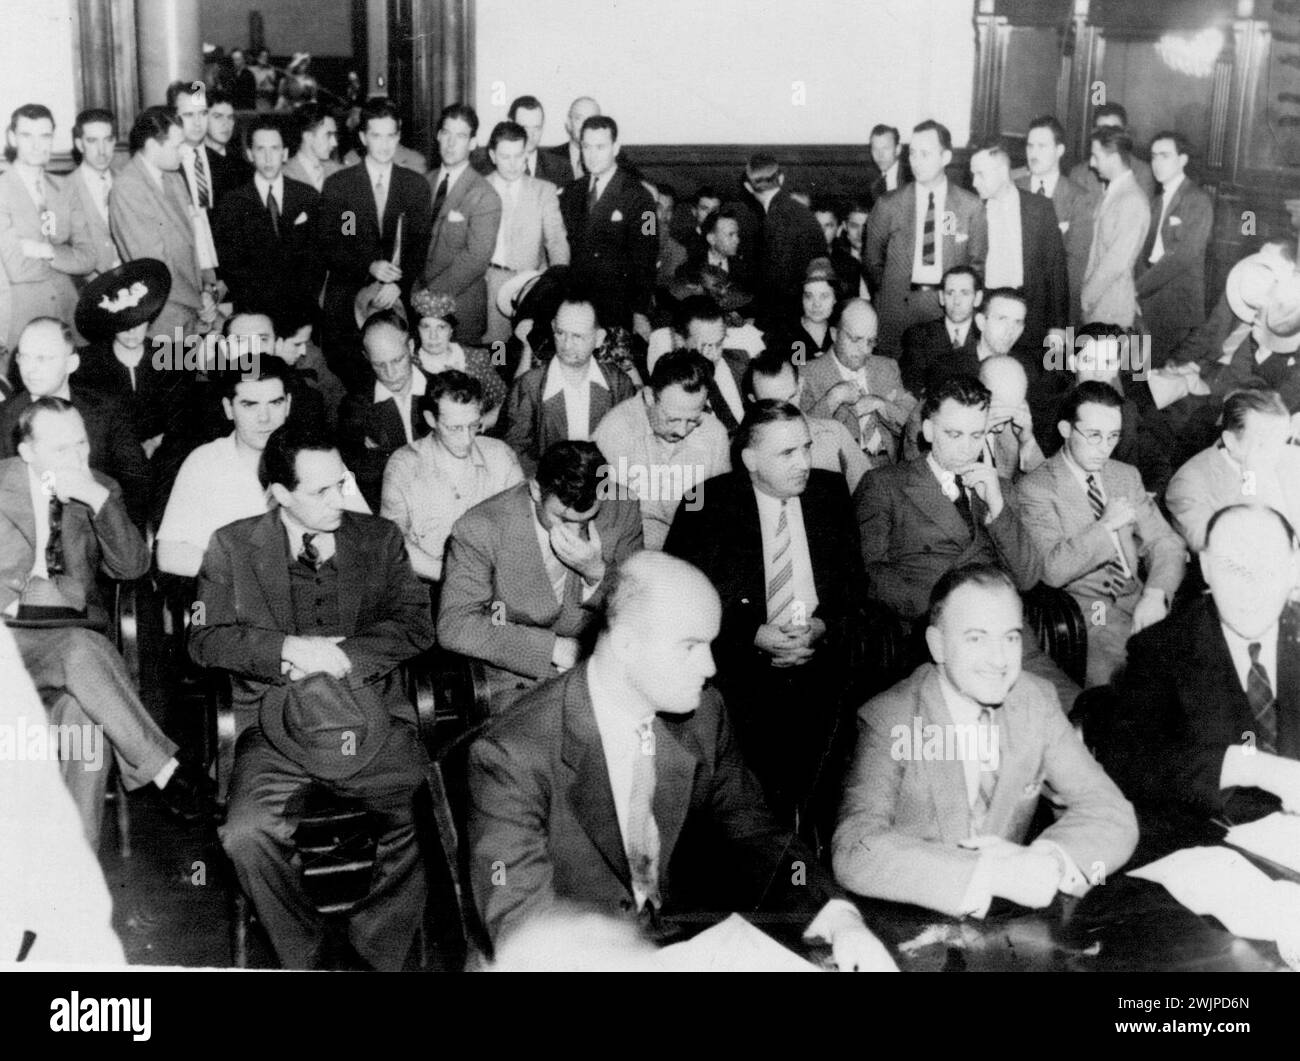 Szene der Spionage-Anklageerhebung New York City -- Eine allgemeine Ansicht des überfüllten Anhörungssaals im Federal Office Building in Brooklyn, als 25 Mitglieder eines angeblichen Spionage-Rings - von denen einige hier gesehen werden können - vor US-Kommissar Martin C. Epstein angeklagt wurden. 7-1, Eine Frau, die schuldig geflogen ist. Alle wurden jeweils 825.000 Kautionen für die Anhörung am 15. Juli abgehalten. 30. Juni 1941. (Foto von ACME). Stockfoto